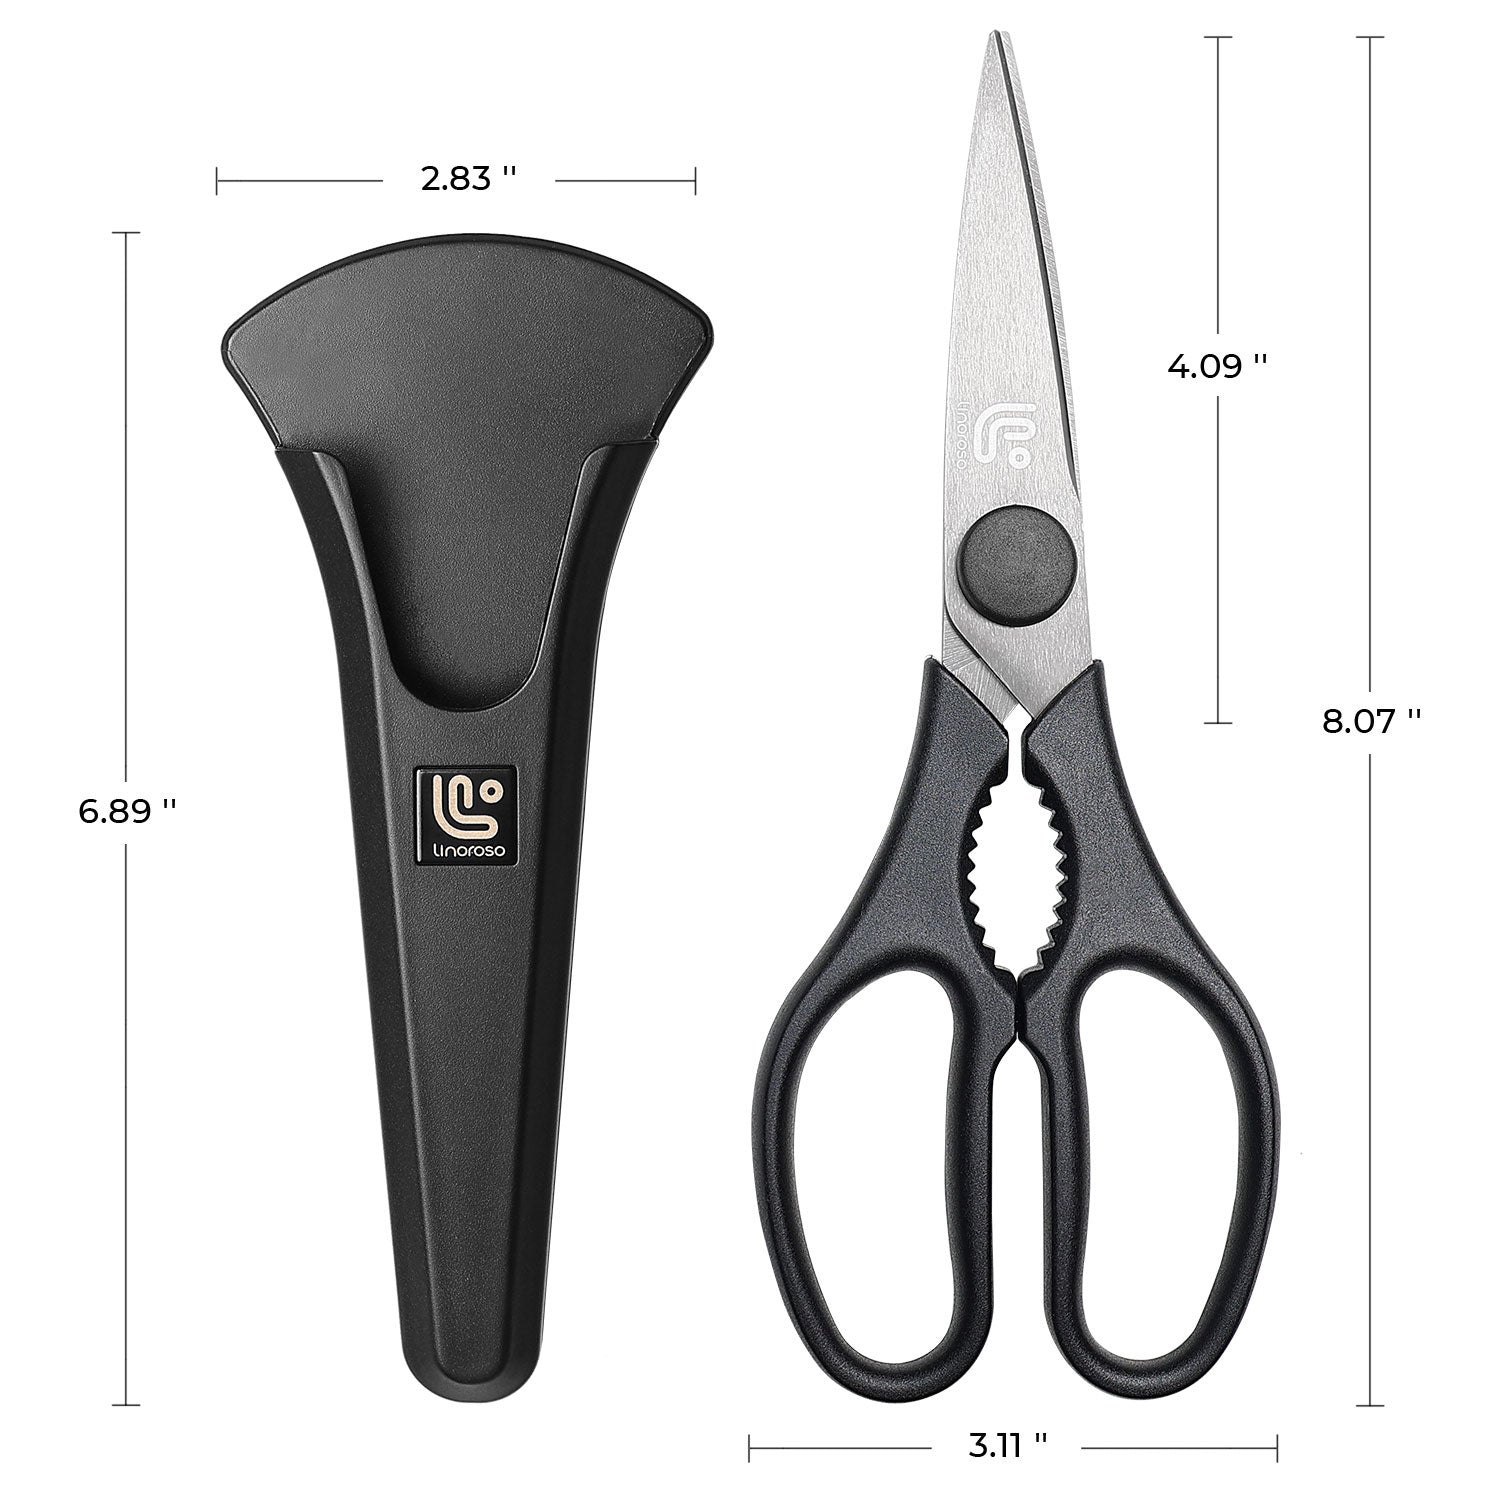 WMF Touch Kitchen Scissor Black